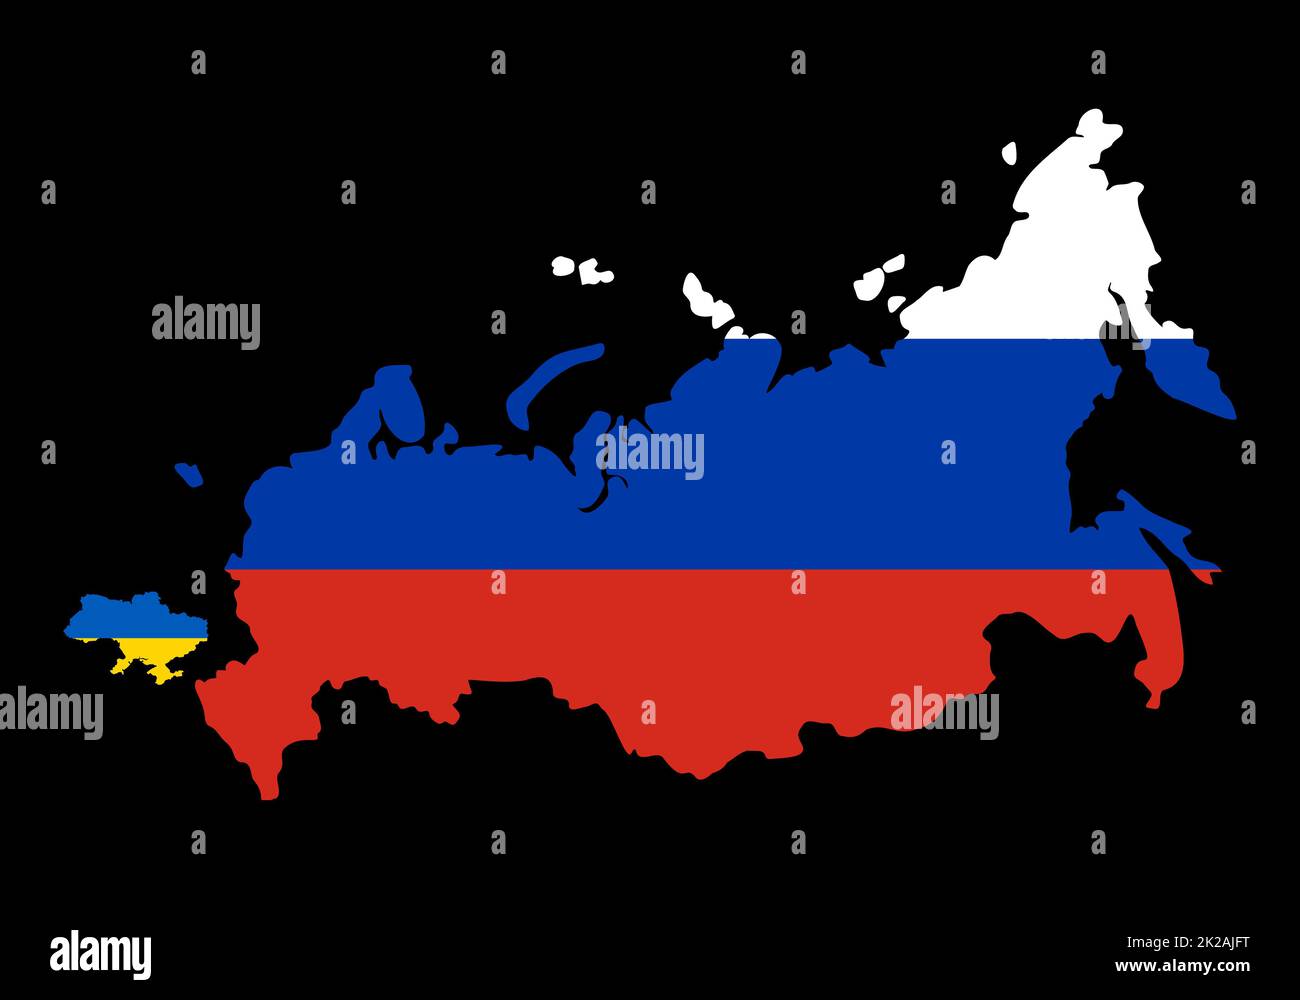 Grande Russia contro piccola Ucraina. Confronta le dimensioni della mappa dei paesi sulla mappa del mondo. Frontiere della Russia e dell'Ucraina. Rappresentazione dei limiti sulla possibilità di guerra. La Russia ha iniziato un attacco massiccio all’Ucraina. Foto Stock